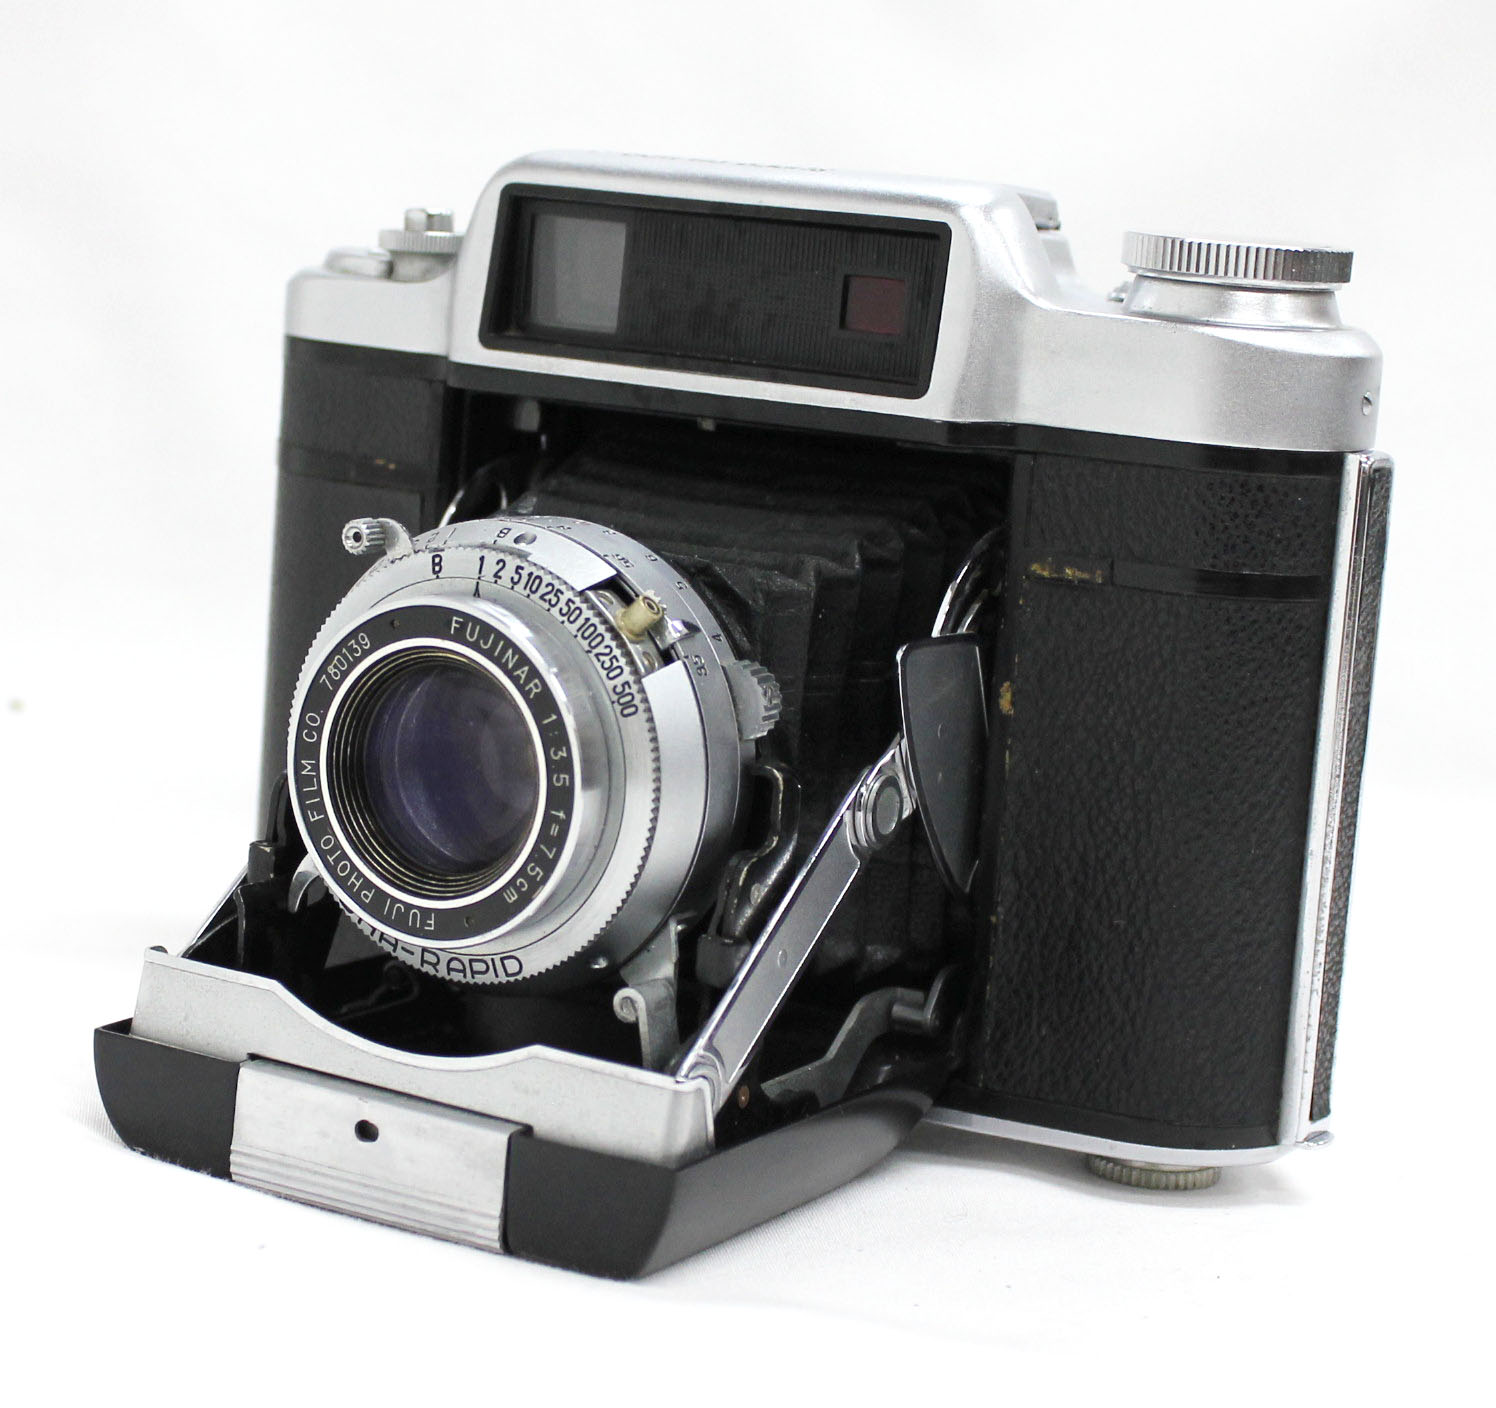 Fuji Super Fujica-6 Six 6x6 Medium Format Film Camera with Fujinar 75mm F/3.5 from Japan Photo 0